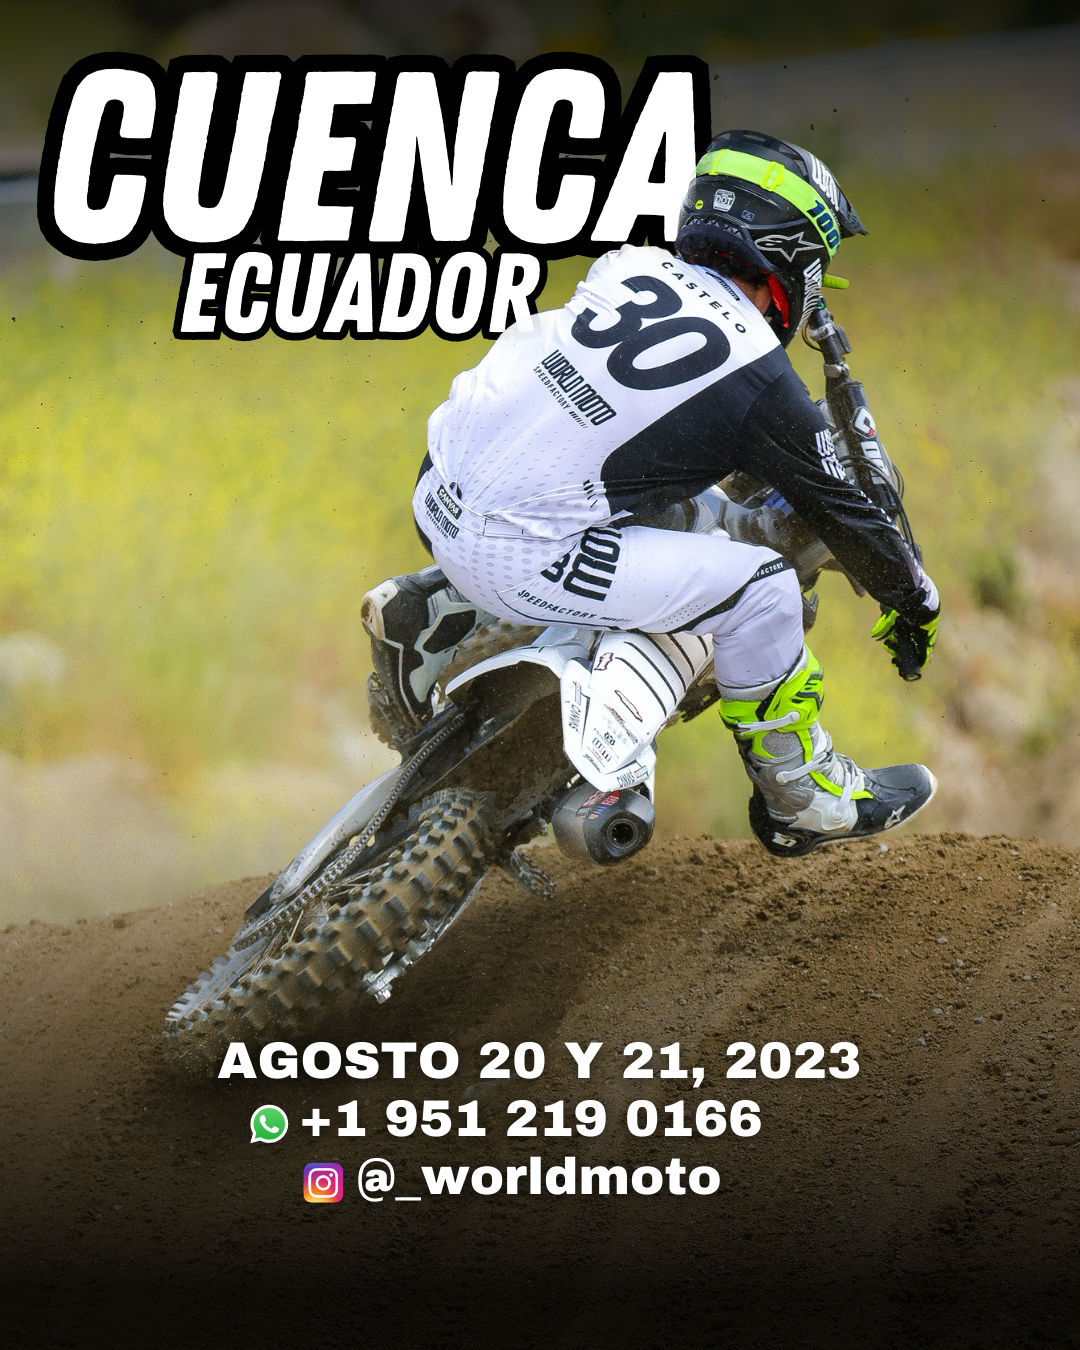 AUGUST 20-21ST | CUENCA, ECUADOR